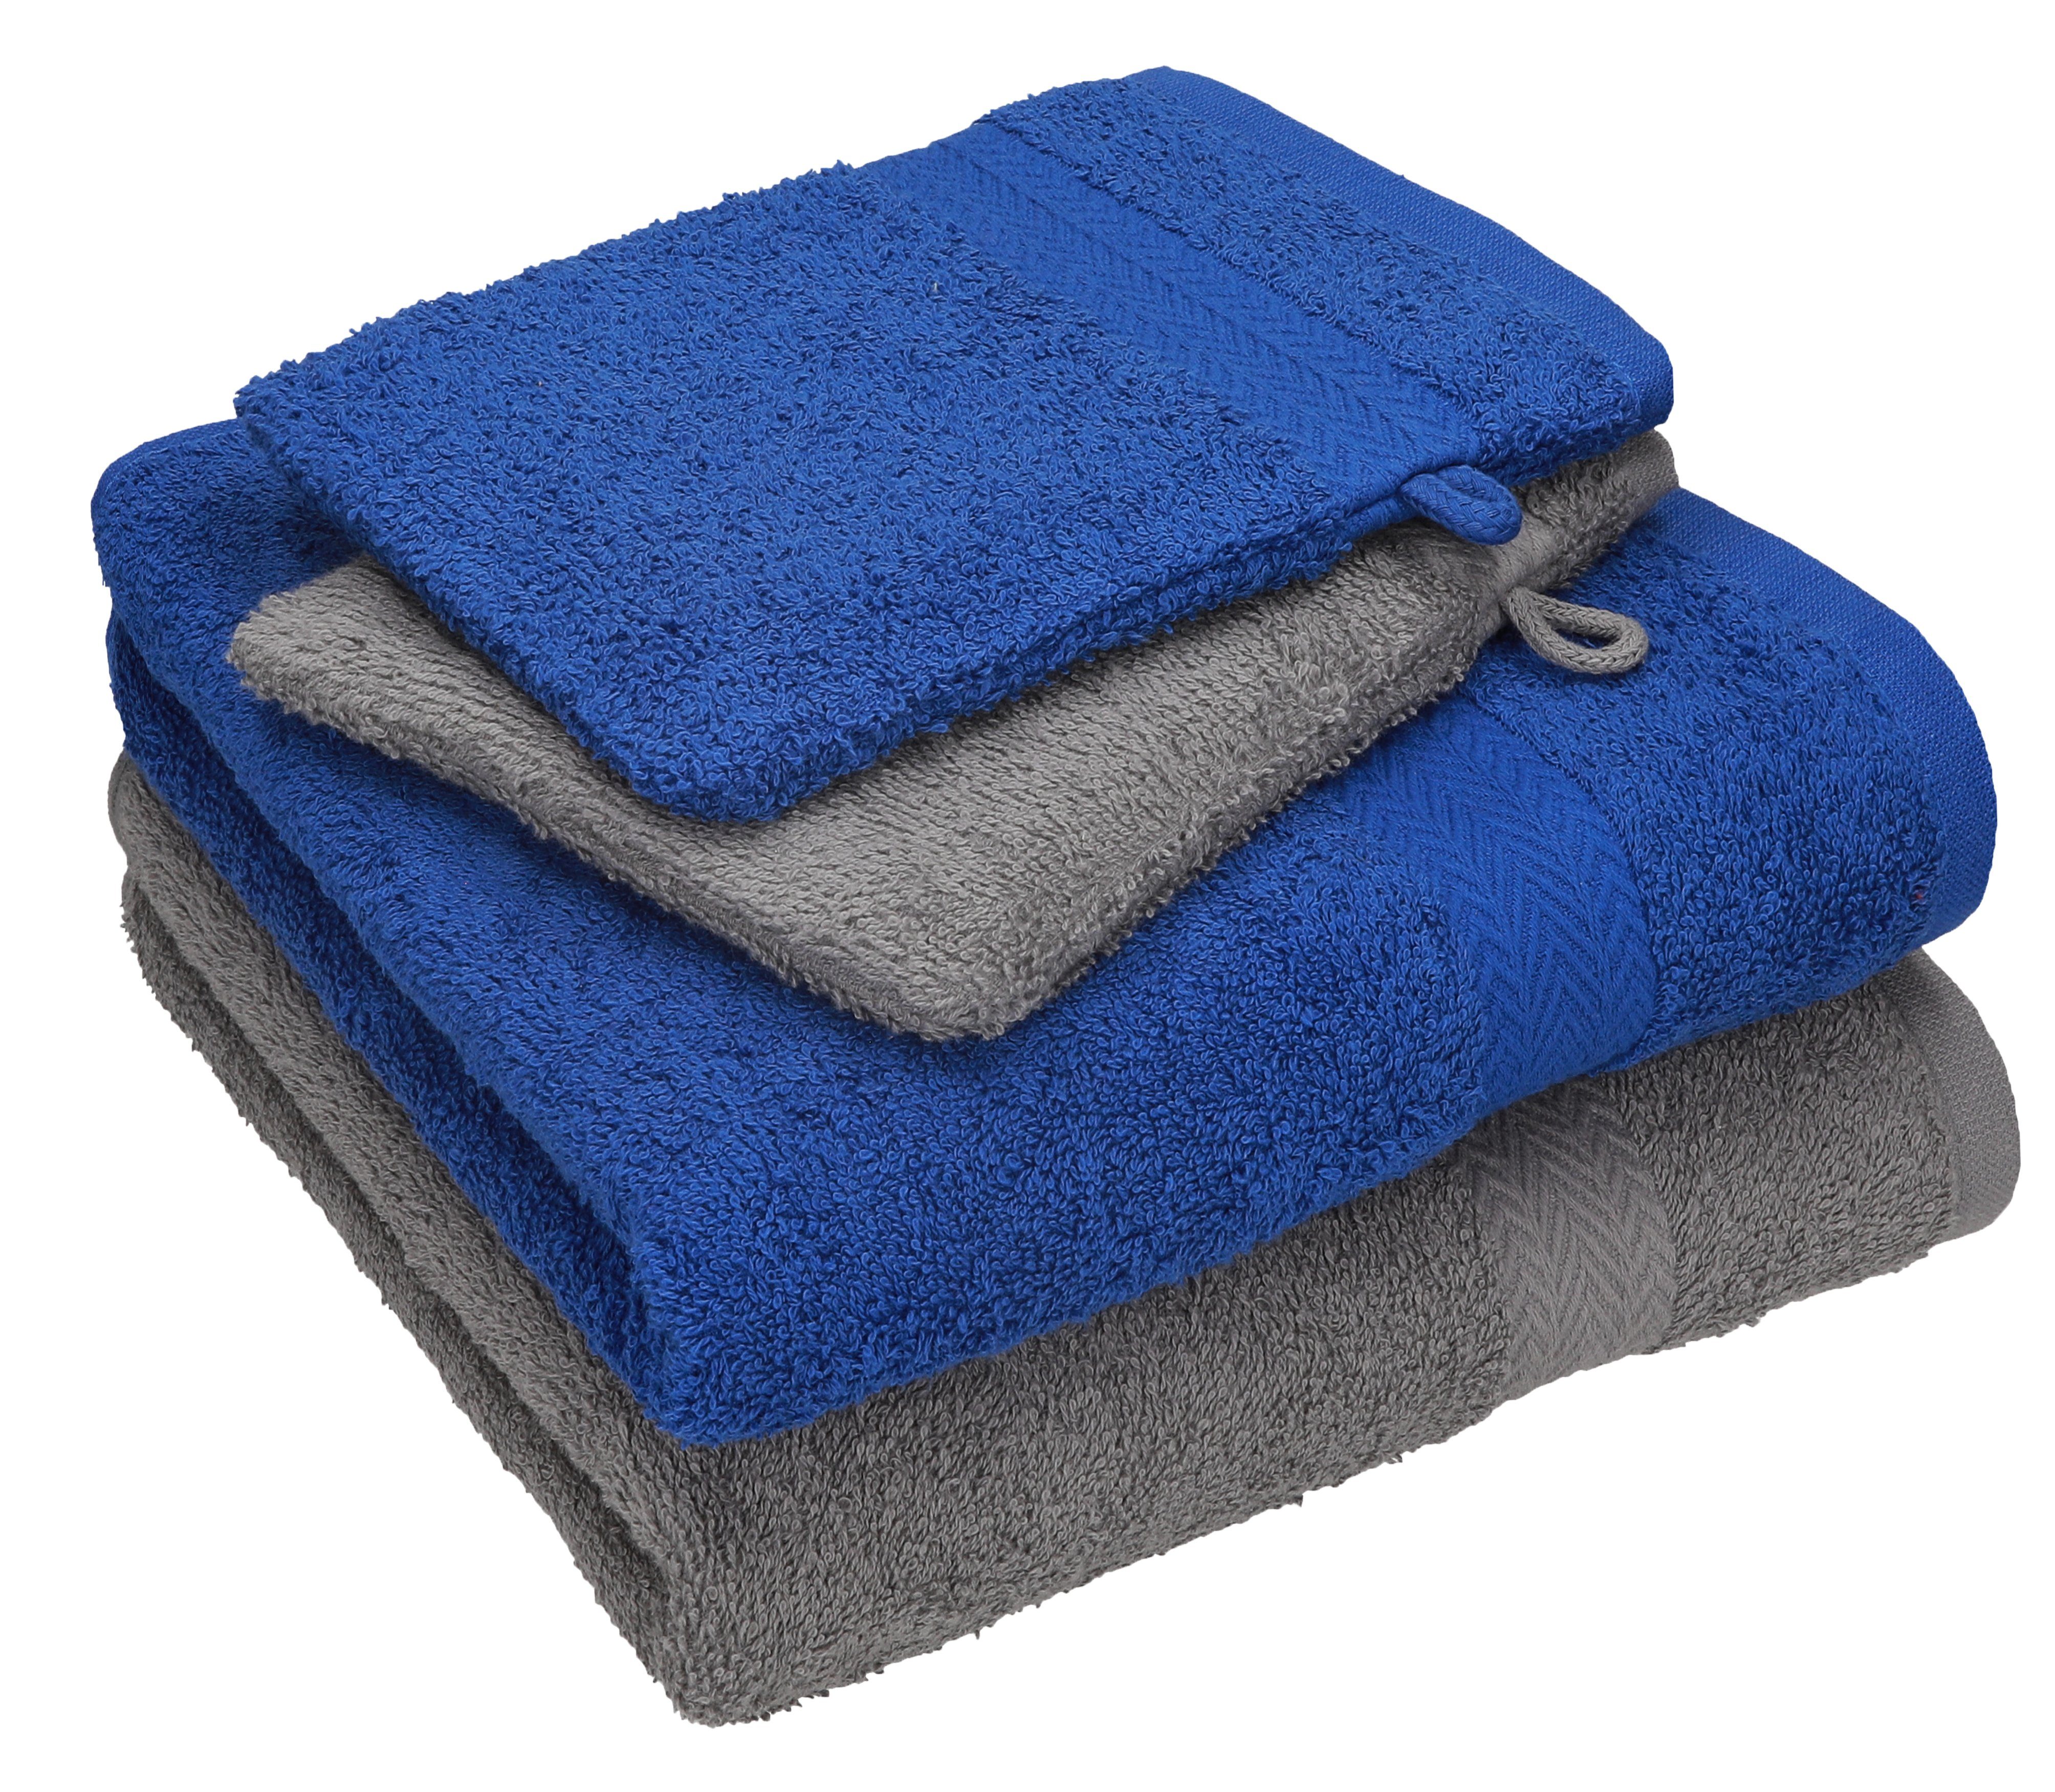 Betz Handtuch Set 4 TLG. Handtuch Set Happy Pack 100% Baumwolle 2 Handtücher 2 Waschhandschuhe, 100% Baumwolle anthrazit grau - royalblau